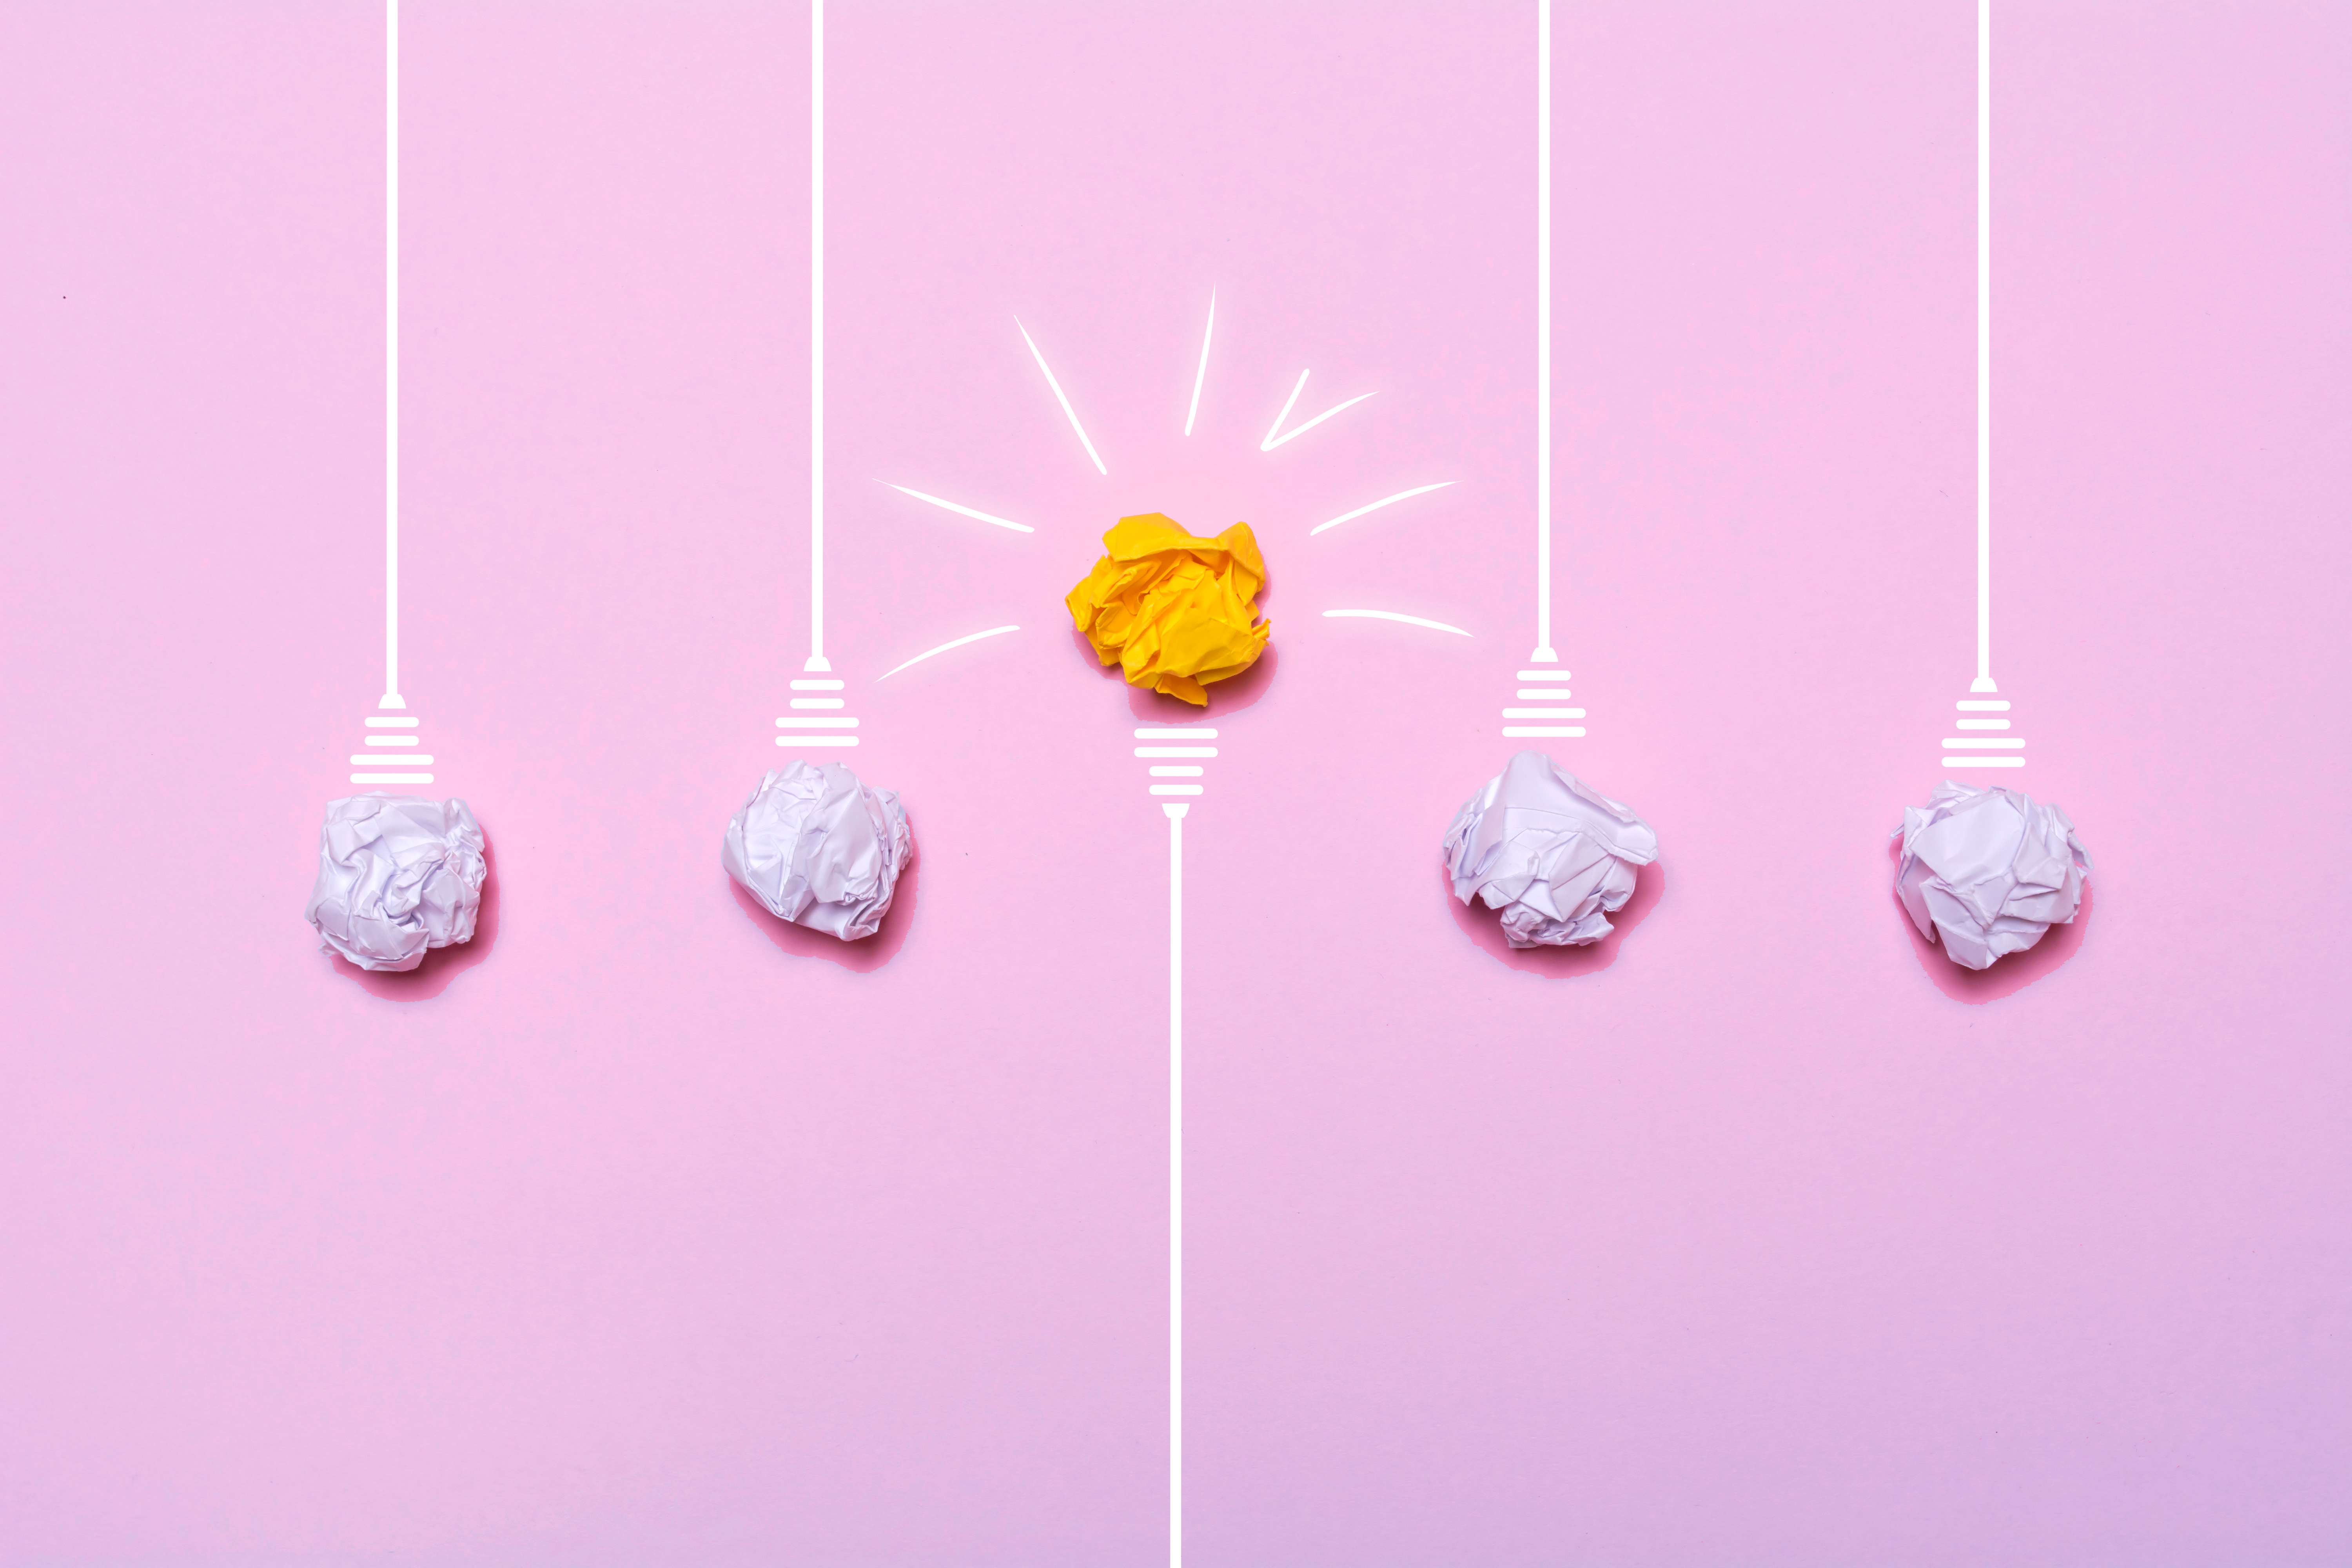 una metáfora visual de la creatividad en las que las bombillas son bolas de papel arrugado de color blanco y hay una en medio que parece encendida de color amarillo